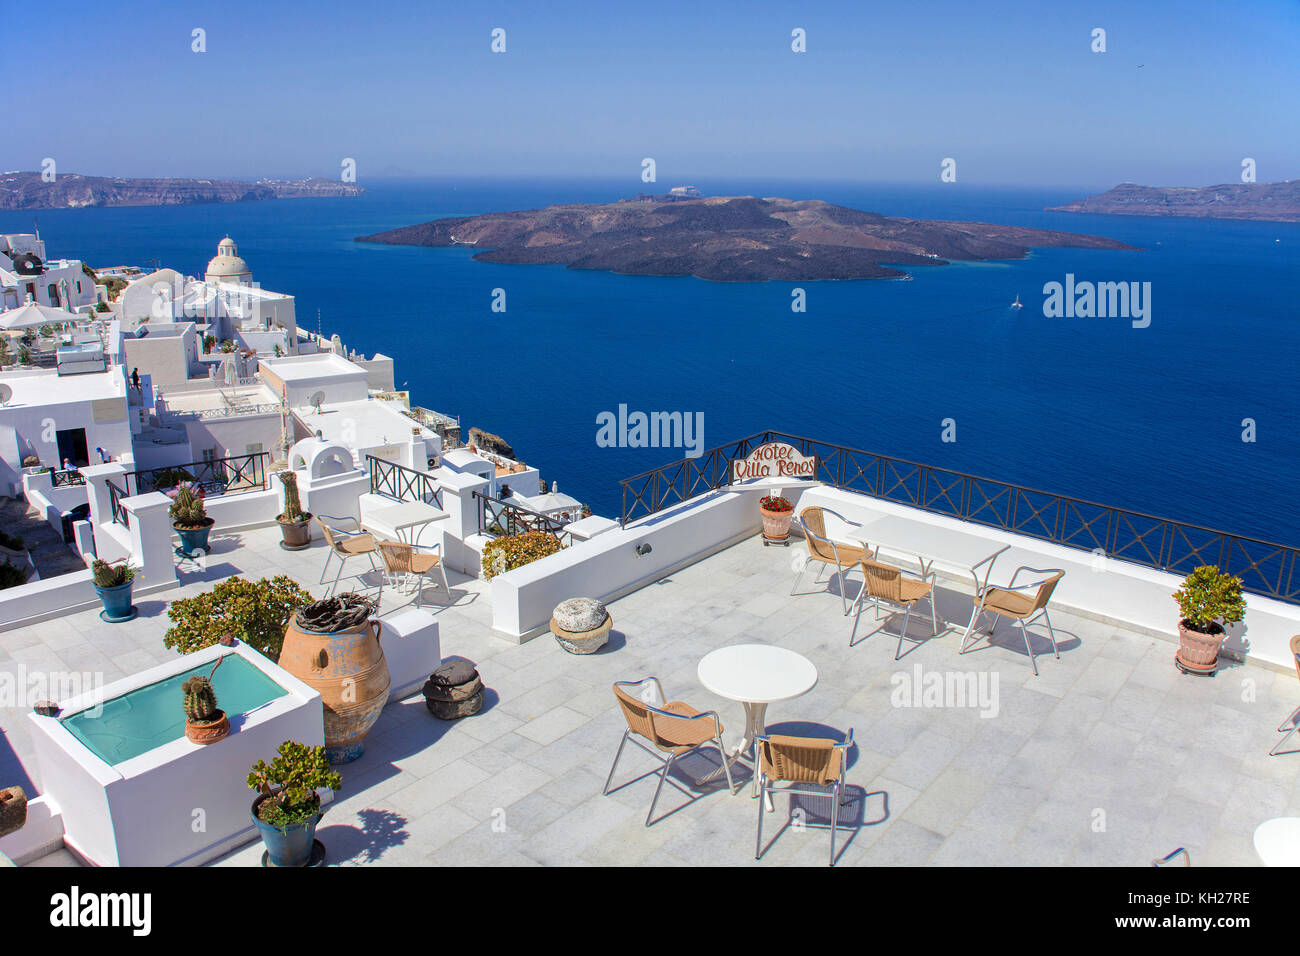 Terrasse sur le toit d'un hôtel au bord du cratère avec vue sur la caldeira, l'île de Santorin, Cyclades, Mer Égée, Grèce Banque D'Images